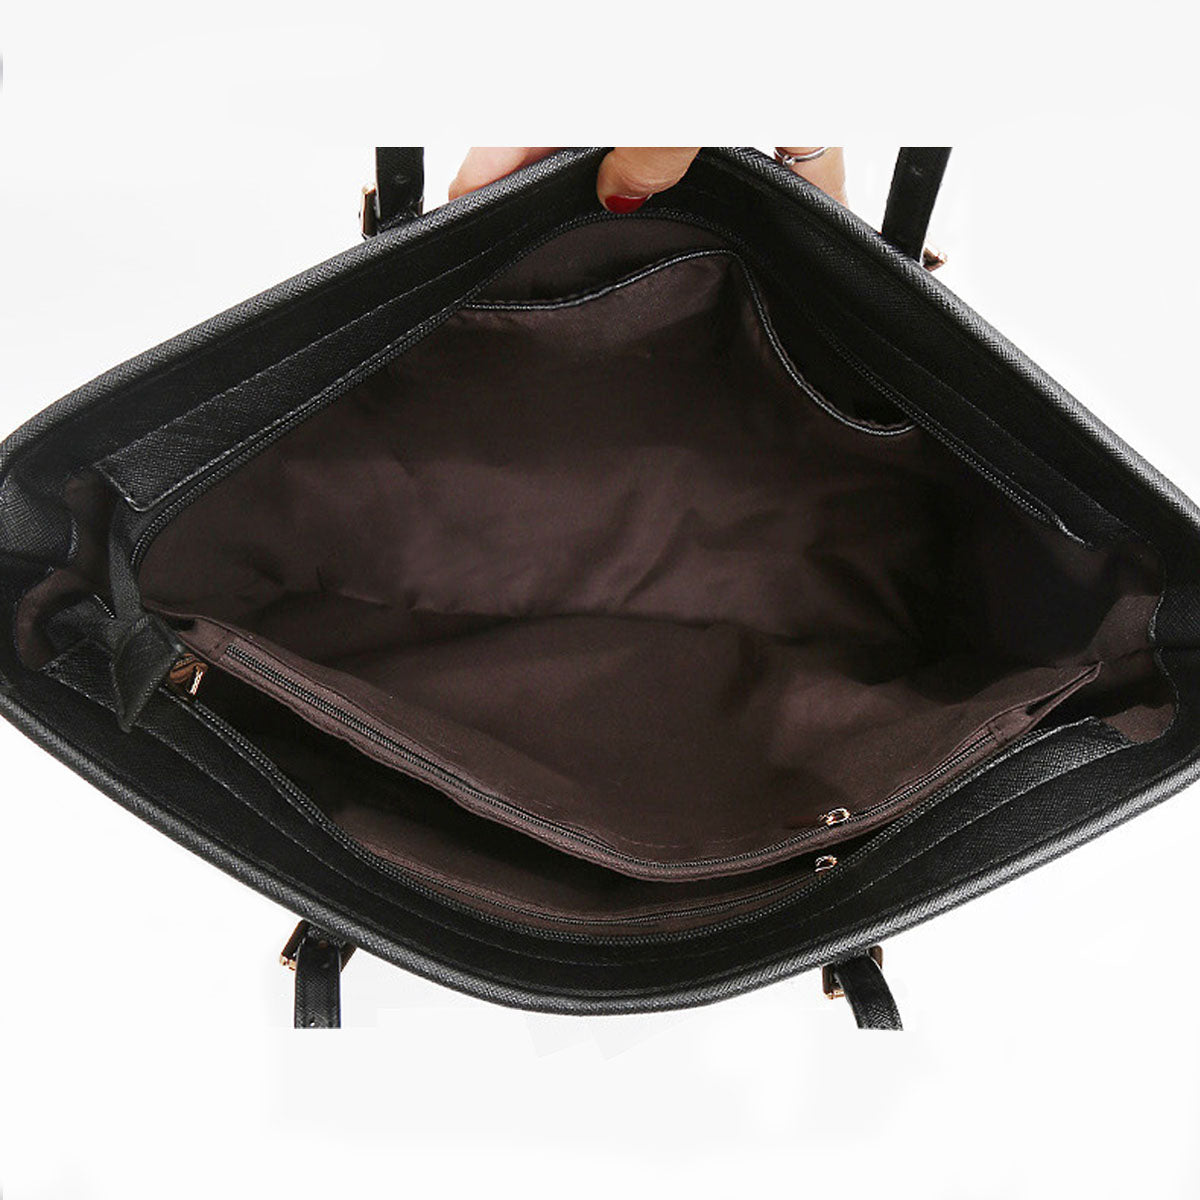 Samoyed Tote Bag V2